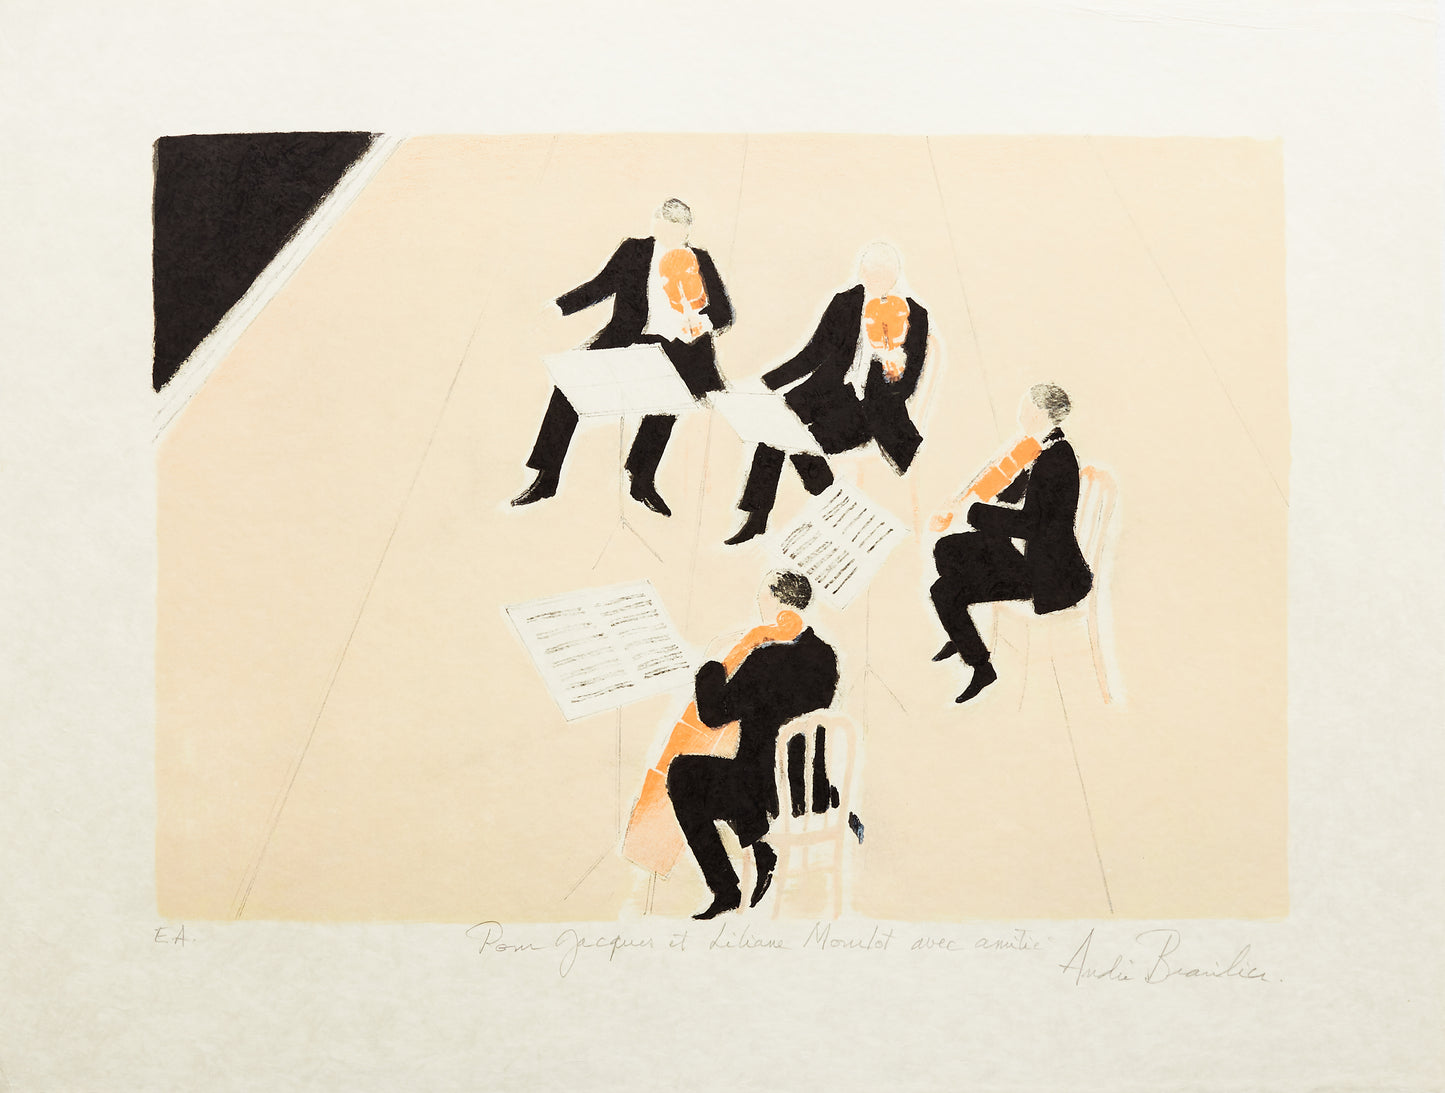 Quatuor - Original Lithograph by André Brasilier, 1986 - Mourlot Editions - Fine_Art - Poster - Lithograph - Wall Art - Vintage - Prints - Original